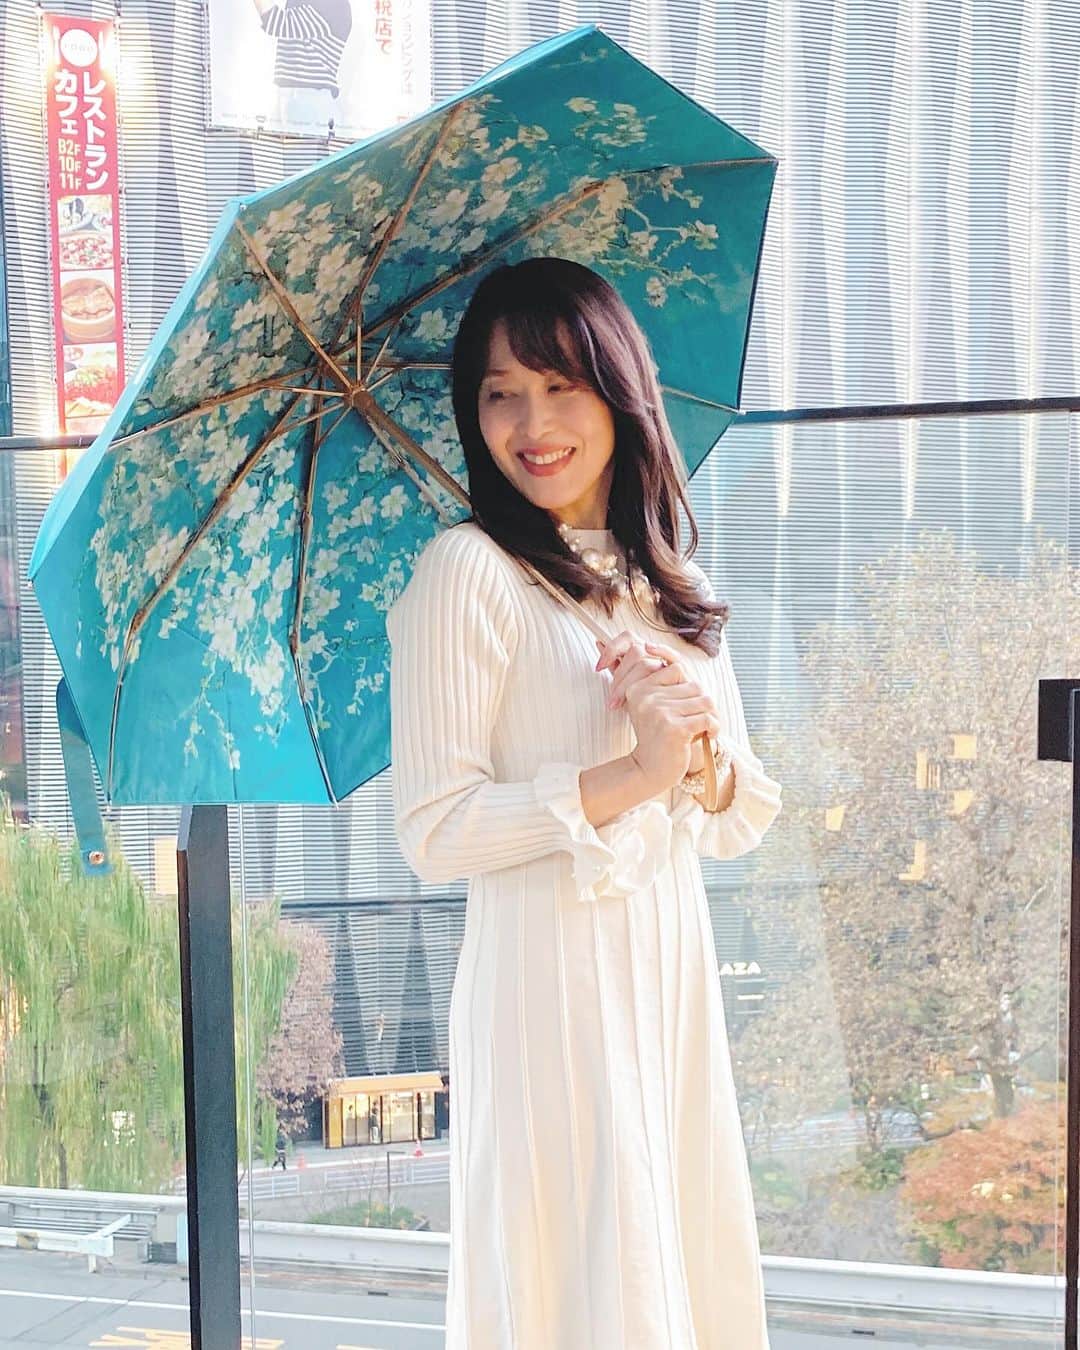 Atsukoのインスタグラム：「今年の冬は暖かい日と寒い日の寒暖差が激しく💦  昨日は冬でも日差しが強く温かい一日でしたね✨ そんなお天気には晴雨兼用傘が☂️ 便利ですね✨  折り畳み傘は壊れやすく 同じようなデザインが多い中  見てみてーー❣️ こーんな素敵な傘をオンラインショップで 見つけちゃった☂️💓  こちらは人気の一点でもある  〝ゴッホの向日葵” 3段折りたたみ傘 （晴雨兼用傘）8本骨  @casatabi  大好きな画家 ”ゴッホのアプリコット” が満開に広がるデザイン✨✨  晴れの日も雨の日も使用ができる 晴雨兼用の折りたたみ傘です  他のゴッホの作品やモネなどの絵画デザインがたくさんあって楽しいのでチェックしてみてね☝️  傘のオンラインショップ @casatabi   【特徴となる5つのポイント❗️】  ♦️生地は99％以上の紫外線を ブロックするんです❗️  ♦️シャンパンゴールドのフレームも 見た目にも美しくしなやかで とってもしっかりしていて 高級感があります チタン合金を使っているので 軽量で丈夫なんです！   ♦️傘面積が通常の日傘より10cmほど大きく設計されており足元まで日差しをしっかりカバーしてくれる優れ物🤍   ♦️手元のハンドルは木製で温もりがあり握りやすく手に馴染みやすいです。 また、ストラップもしっかりした作りになっています。   ♦️バンドのボタンや露先もシャンパンゴールドのパーツにするなど、細部まで贅沢で精巧な仕上がりになっています。     ♦️生地は二枚生地構造で紫外線(UVA, UVB)、可視光線、赤外線(IR)をも防いでくれます  また手を挟みづらくスムーズな開閉ができる耐風性のある設計になっているから安心だよ😊  🤍クーポンコード🤍  500円OFFのクーポンコードいただきました✨ よろしければお使いくださいね🤍 ↓↓↓↓↓  🤍SZXGJ9YBGA9H  @casatabi   #晴雨兼用傘 #ゴッホ #紫外線99%カット #アプリコット #絵画の傘 #絵画好き #木製のハンドル #シャンパンゴールドのフレーム #高級感#PR」